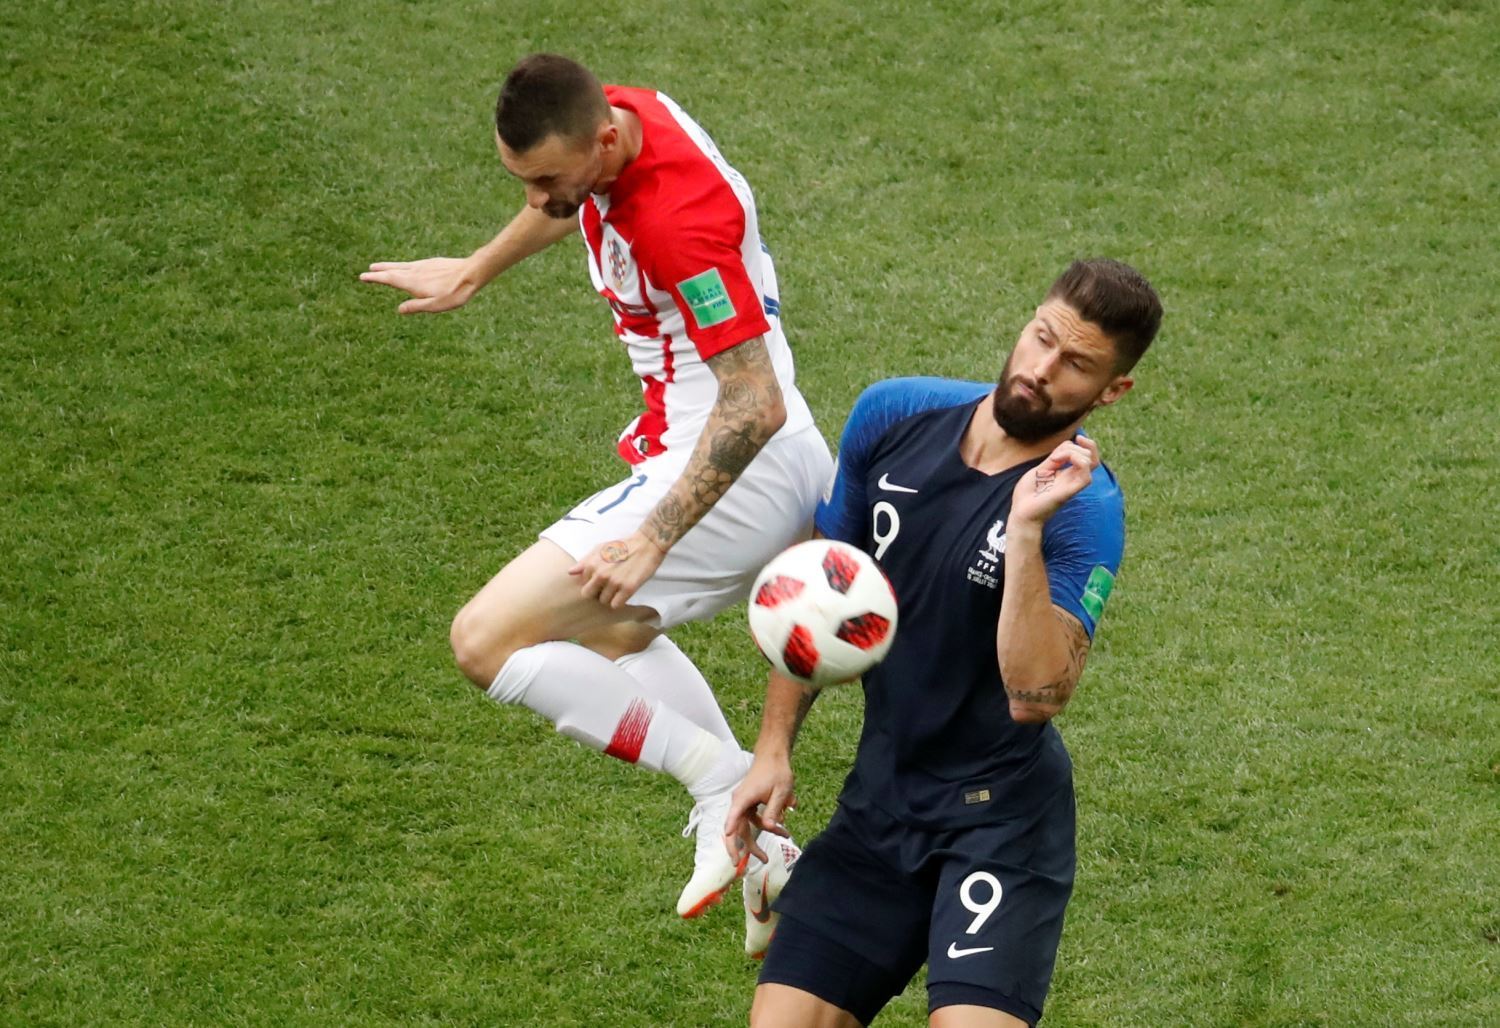 Baixe o pôster da França, bicampeã da Copa do Mundo na Rússia - Esportes -  R7 Copa 2018